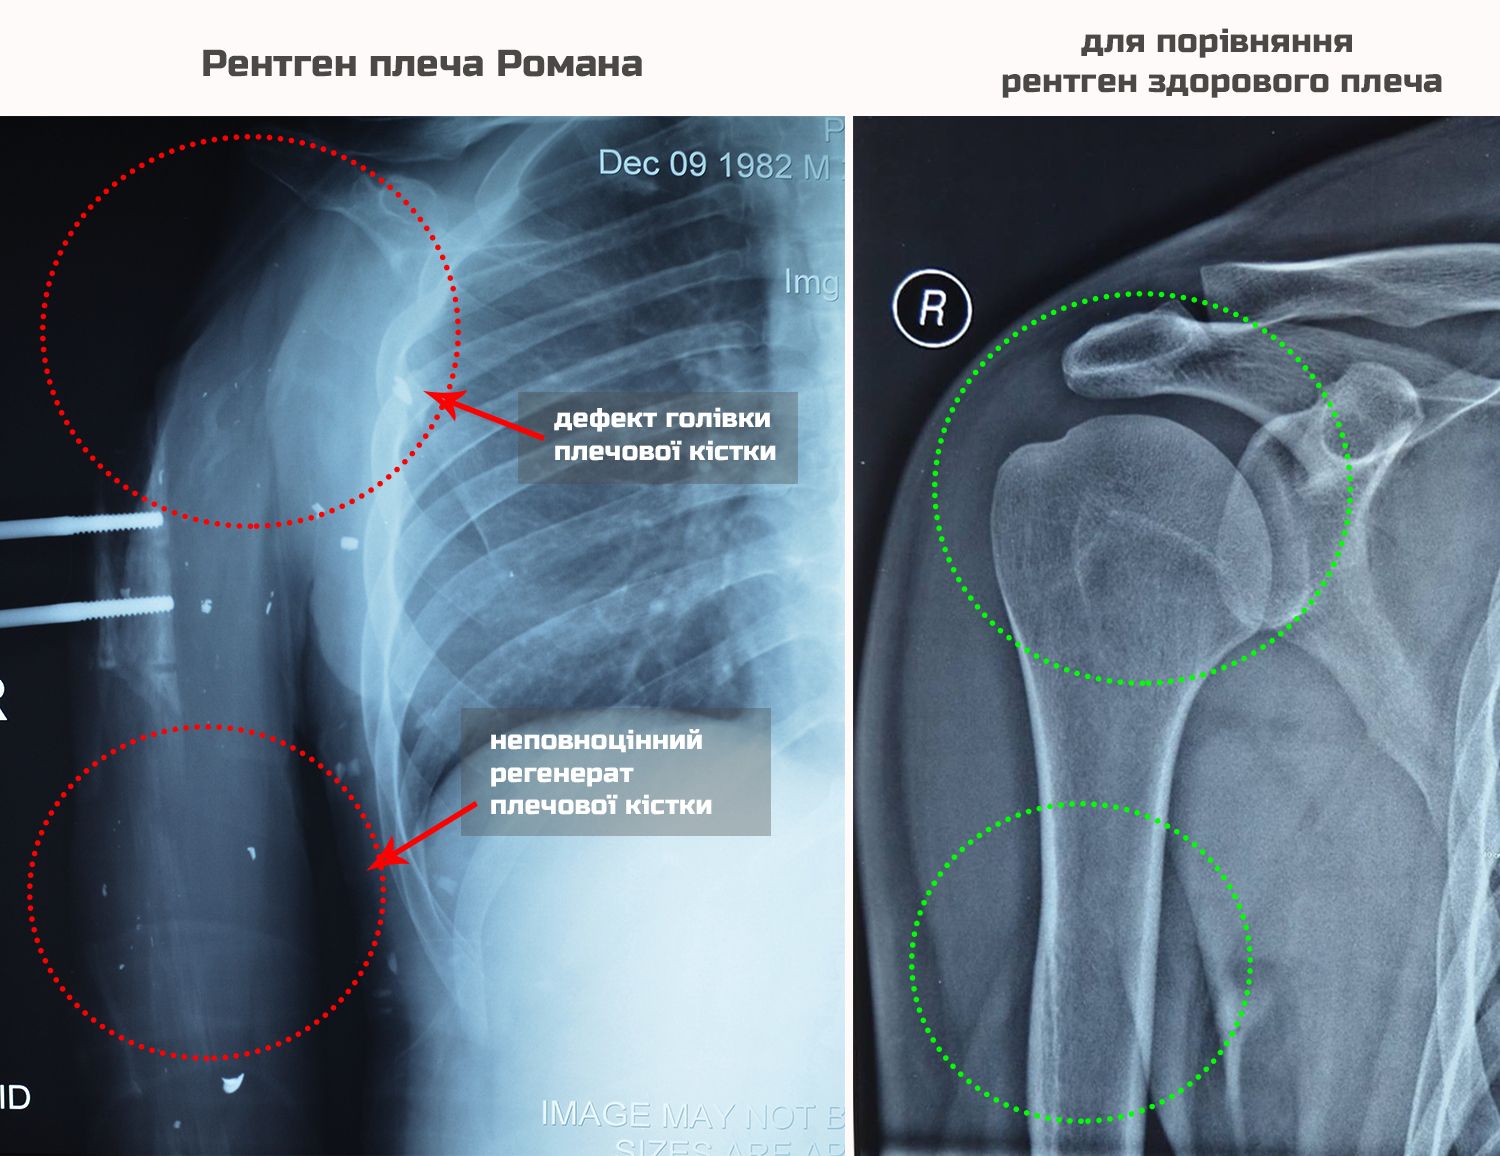 X-ray comparison